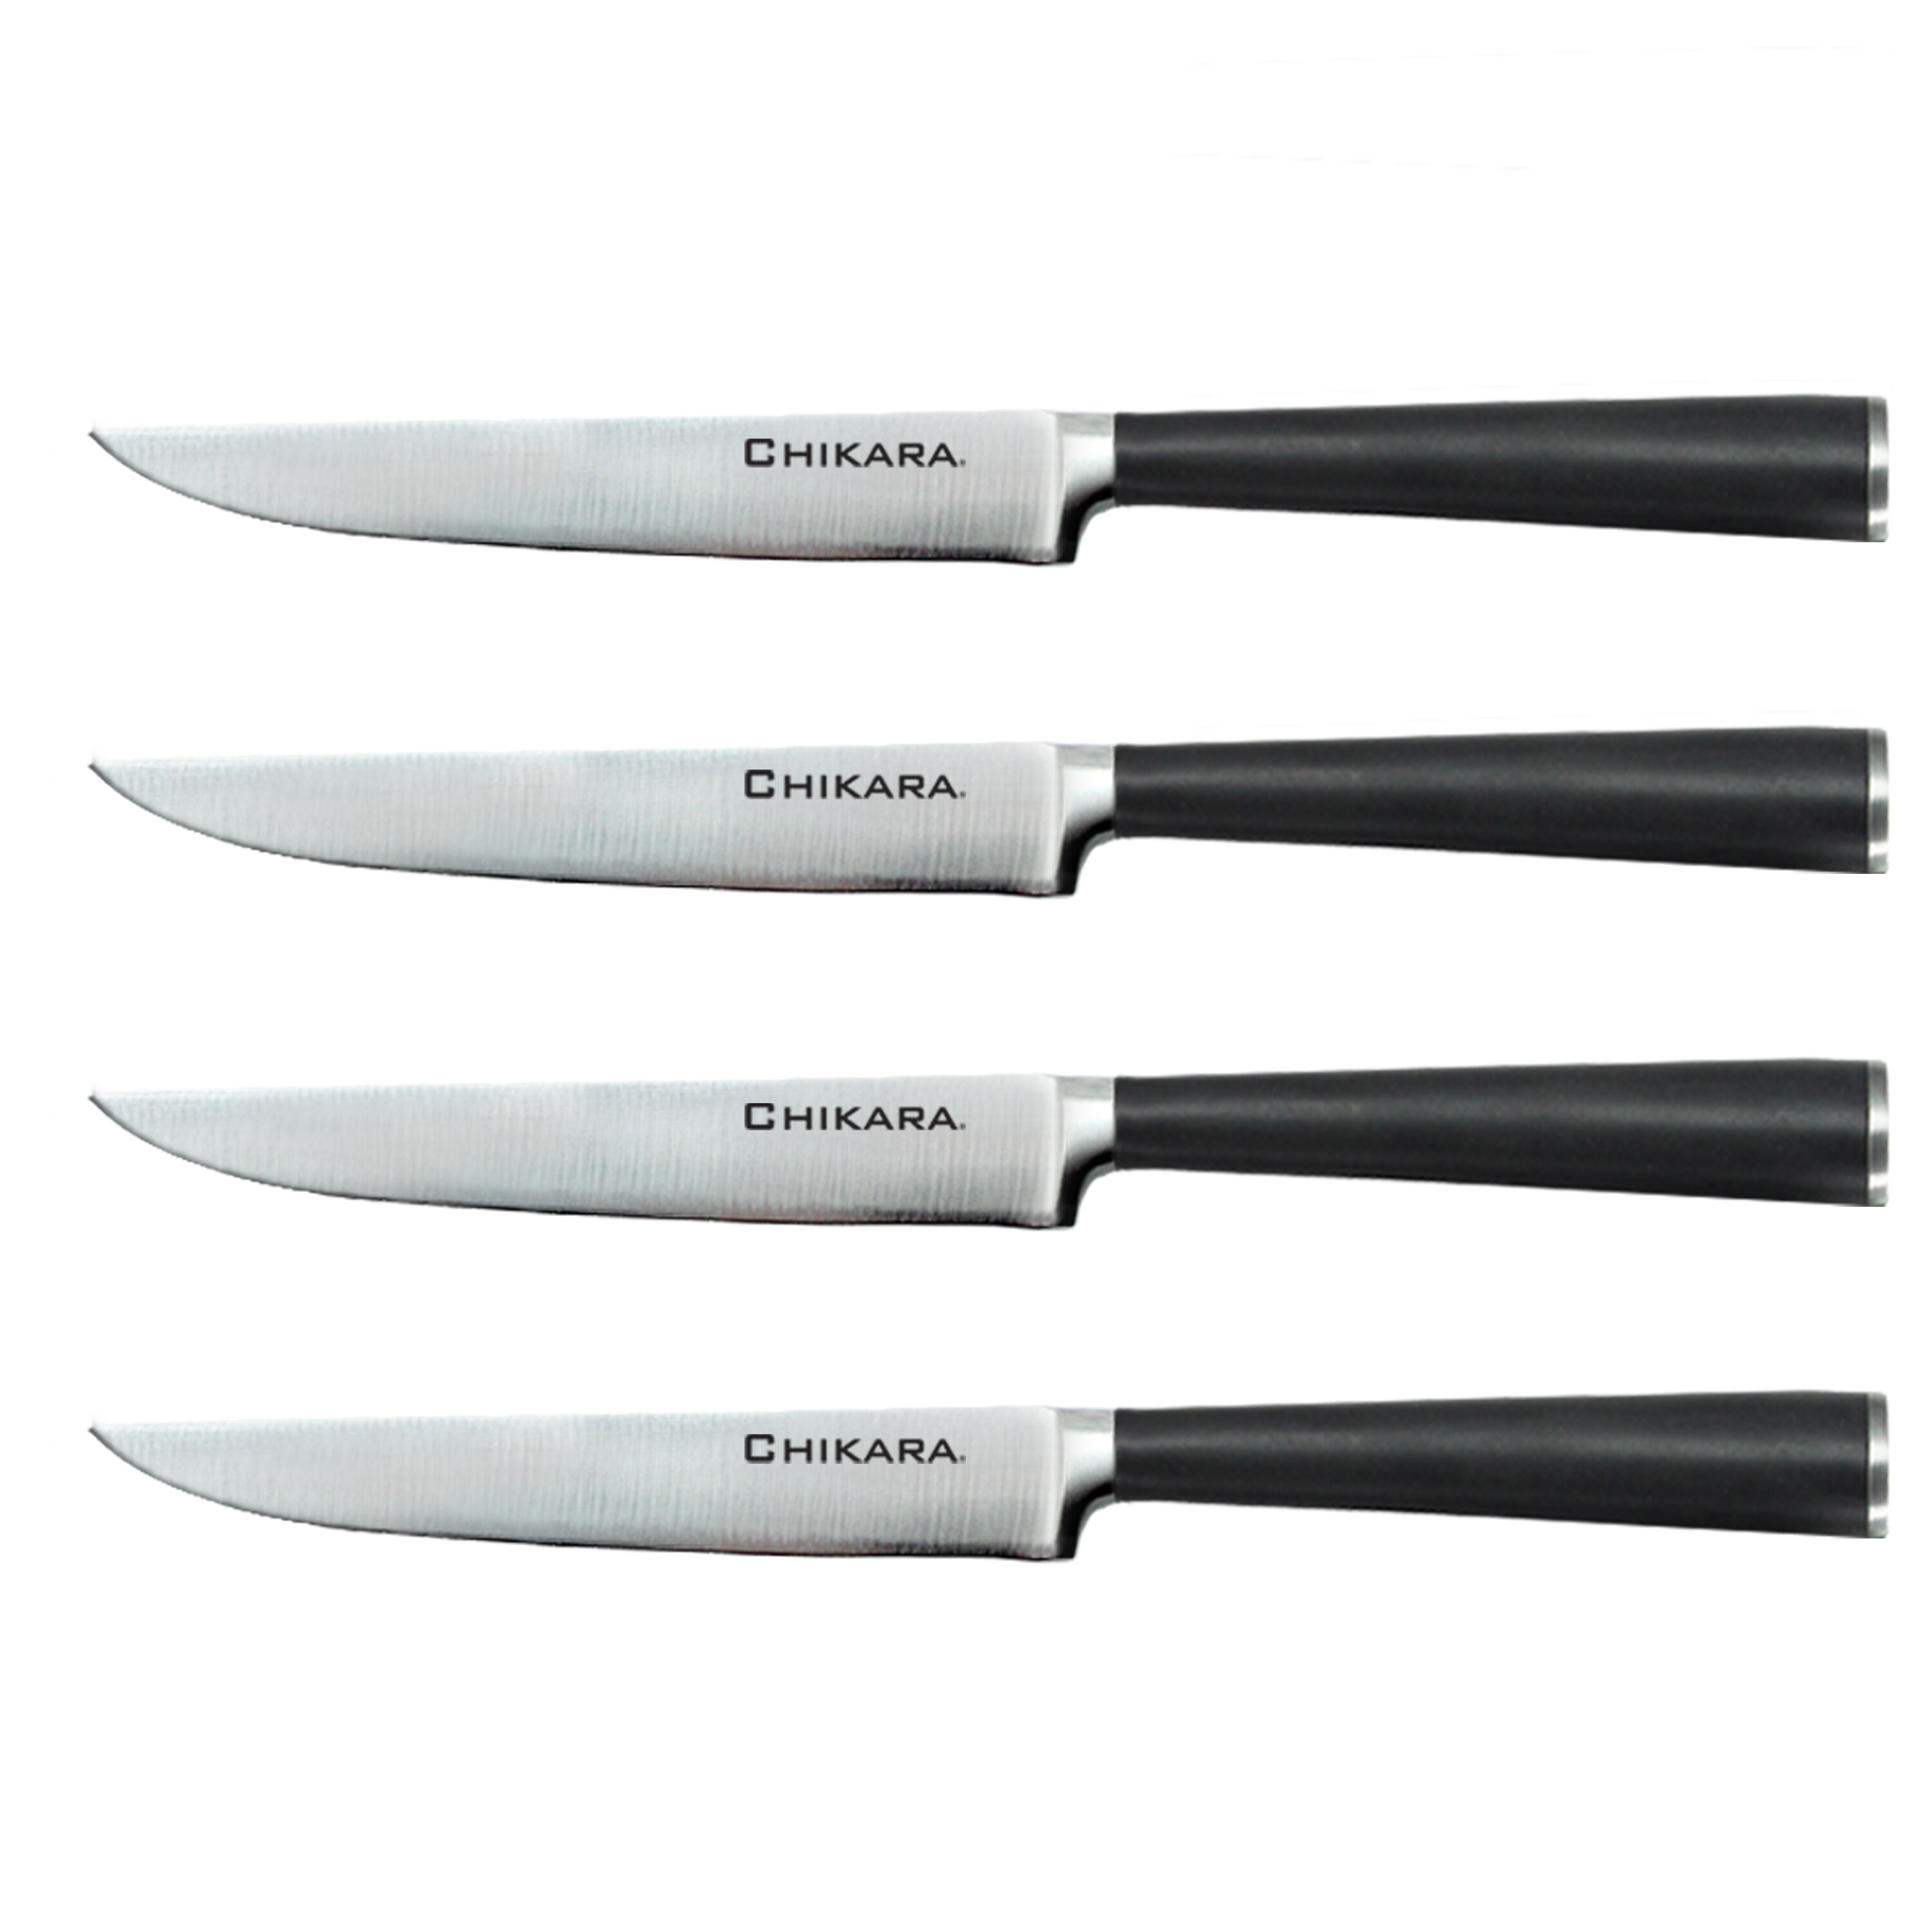 Ginsu Chikara Series 4 Carbon Stainless Steel Steak Knife Set & Reviews Wayfair